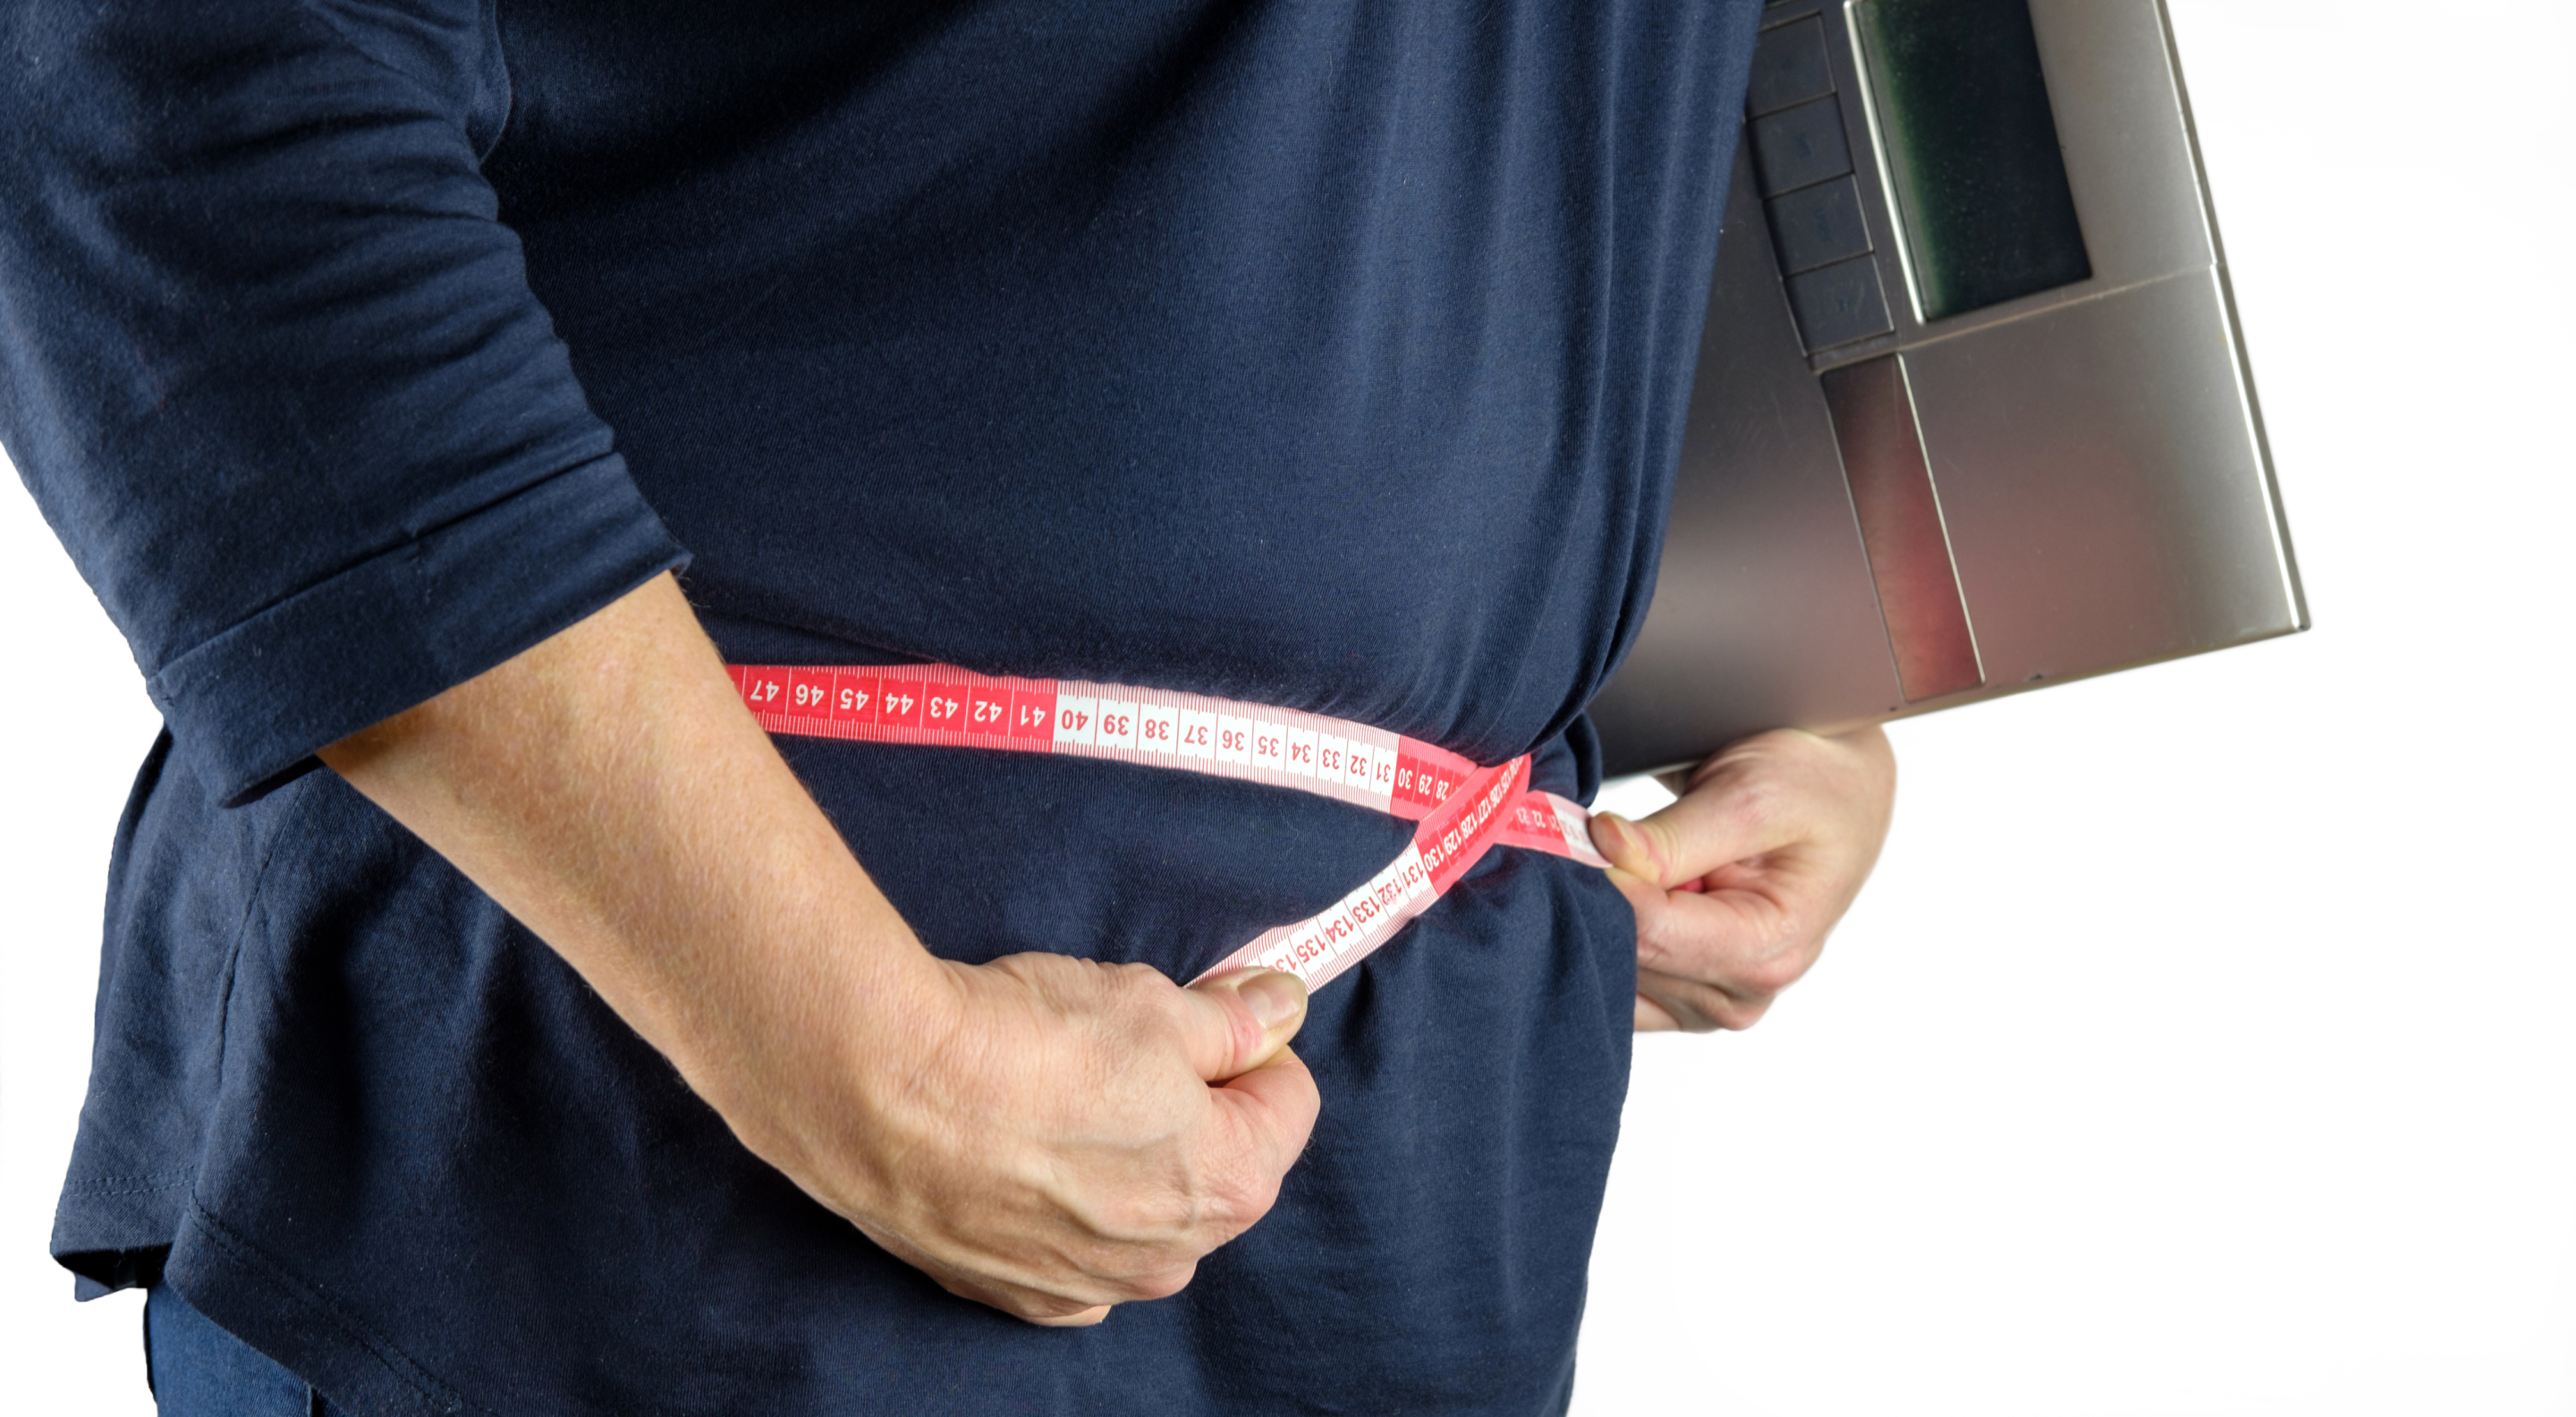 Sobrepeso, cinta métrica, medir la circunferencia abdominal para la obesidad.